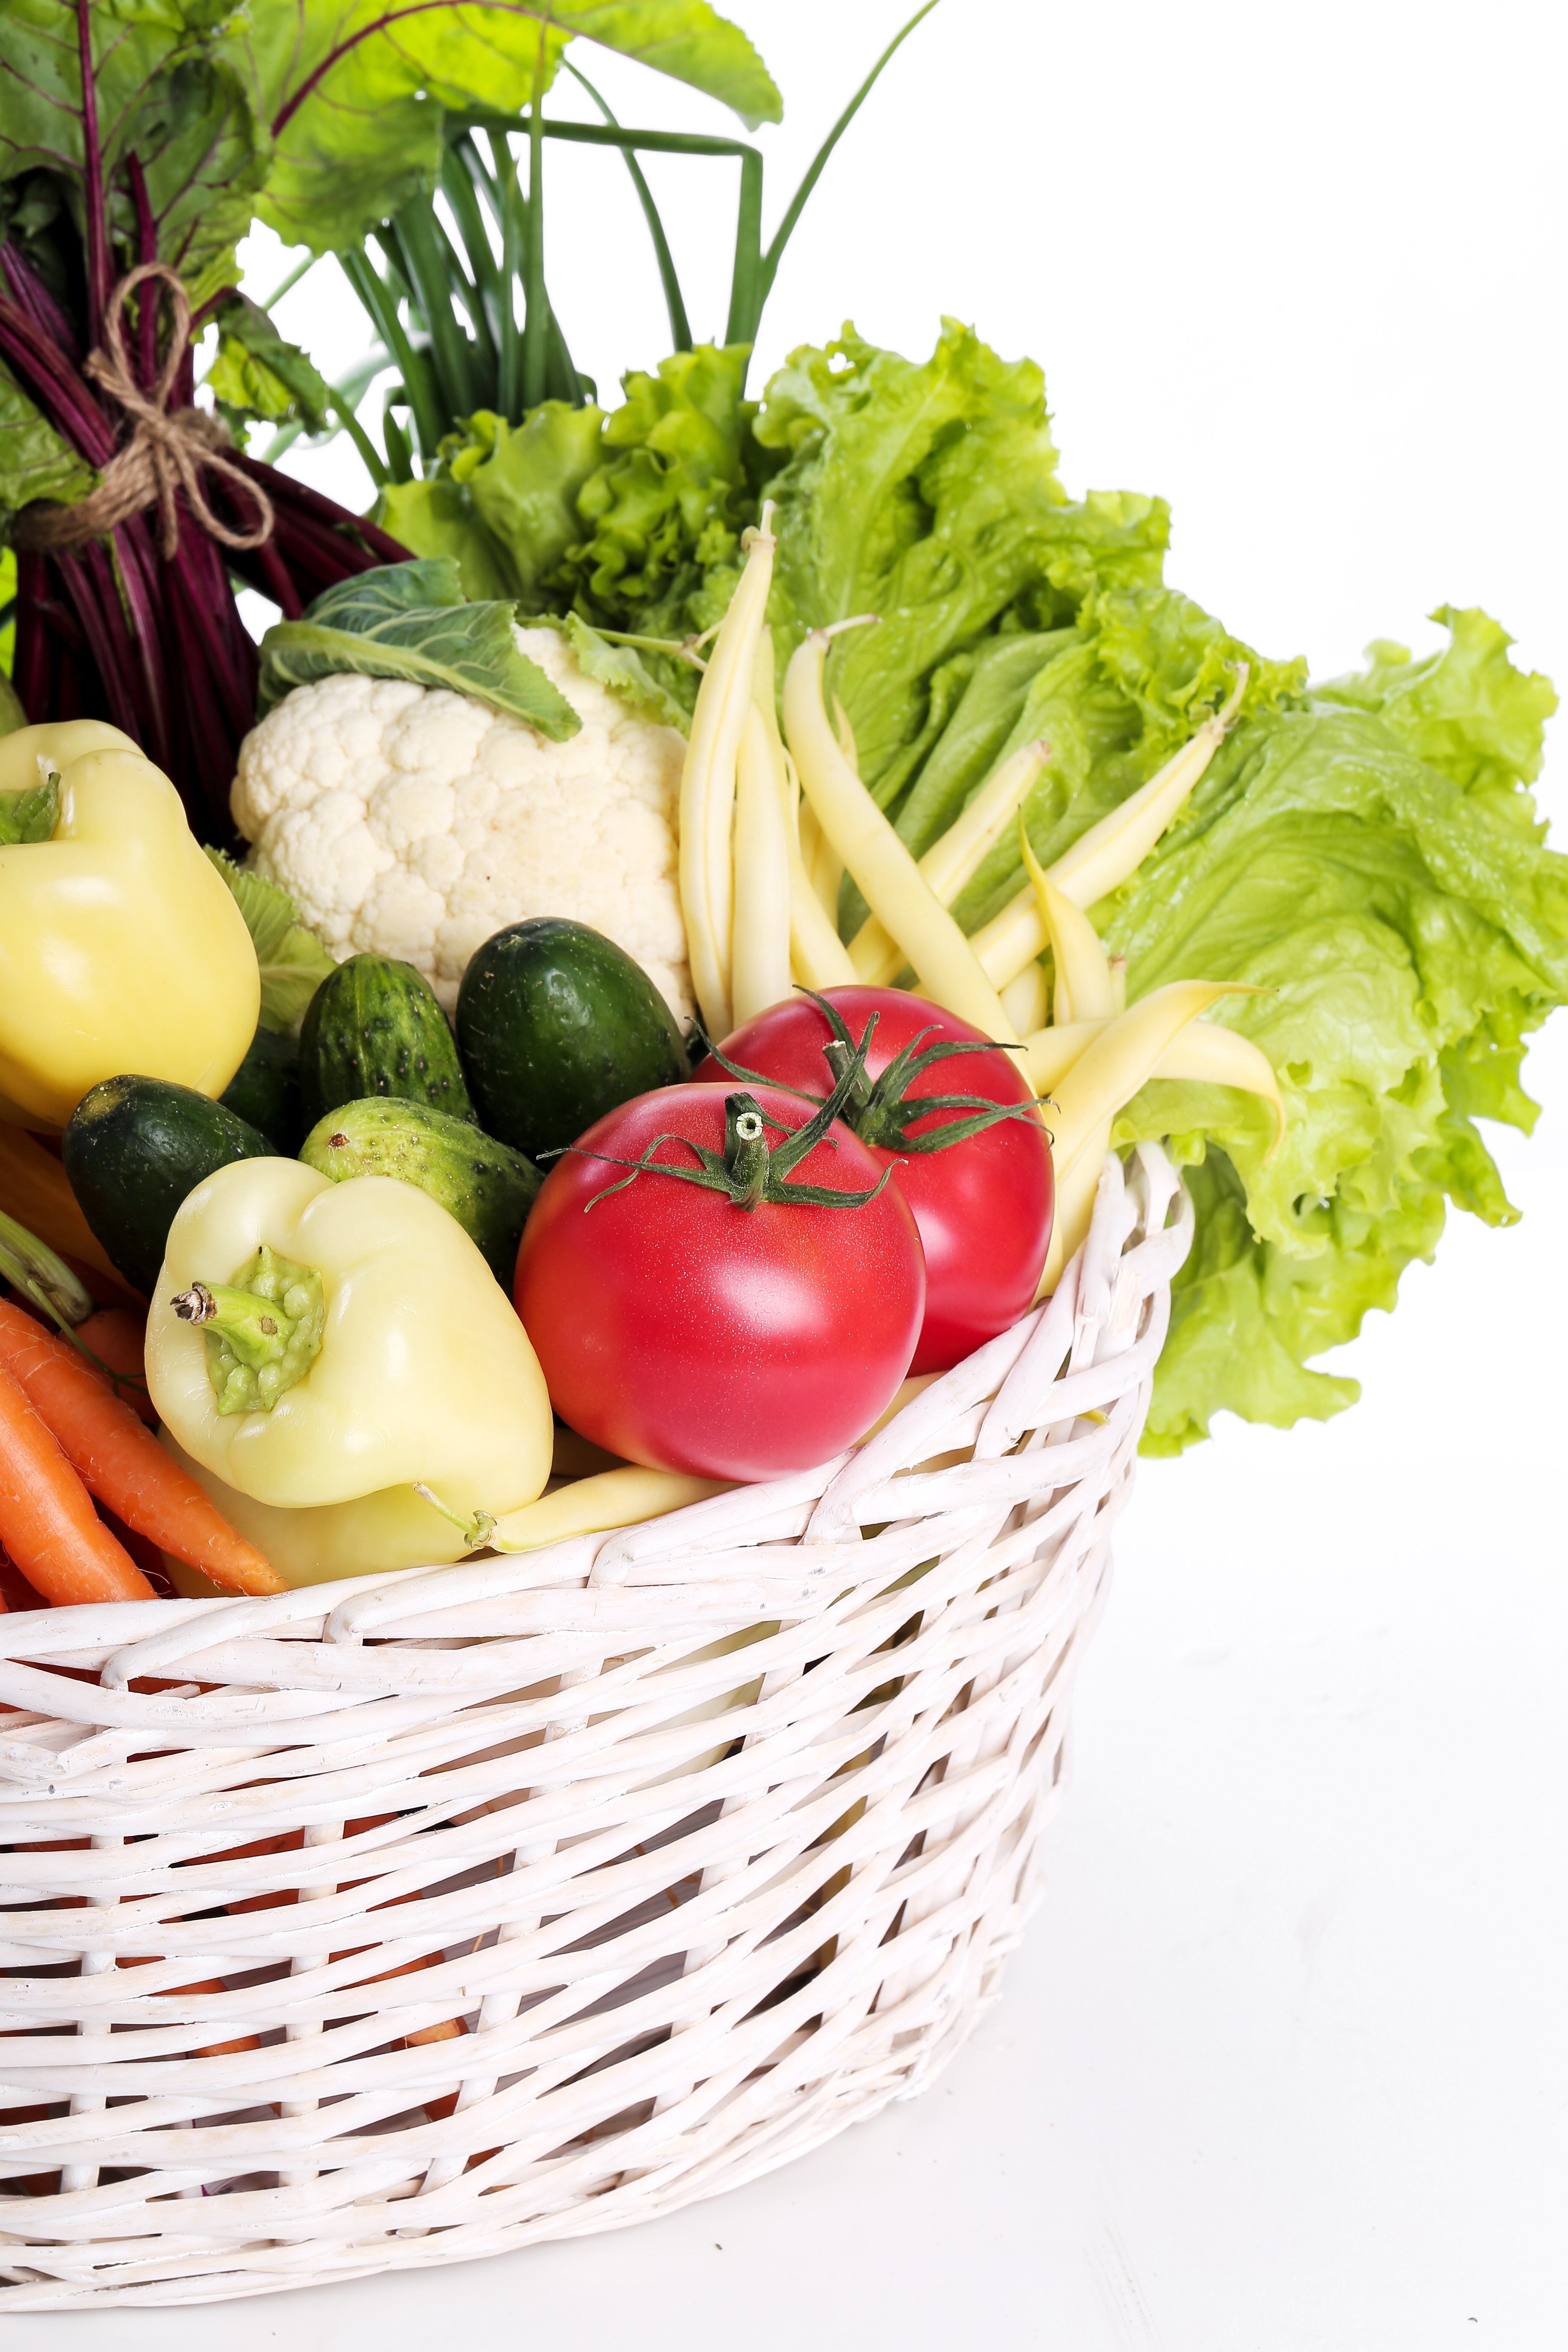 Billede af forskellige grøntsager i en kurv. Billede: Colourbox